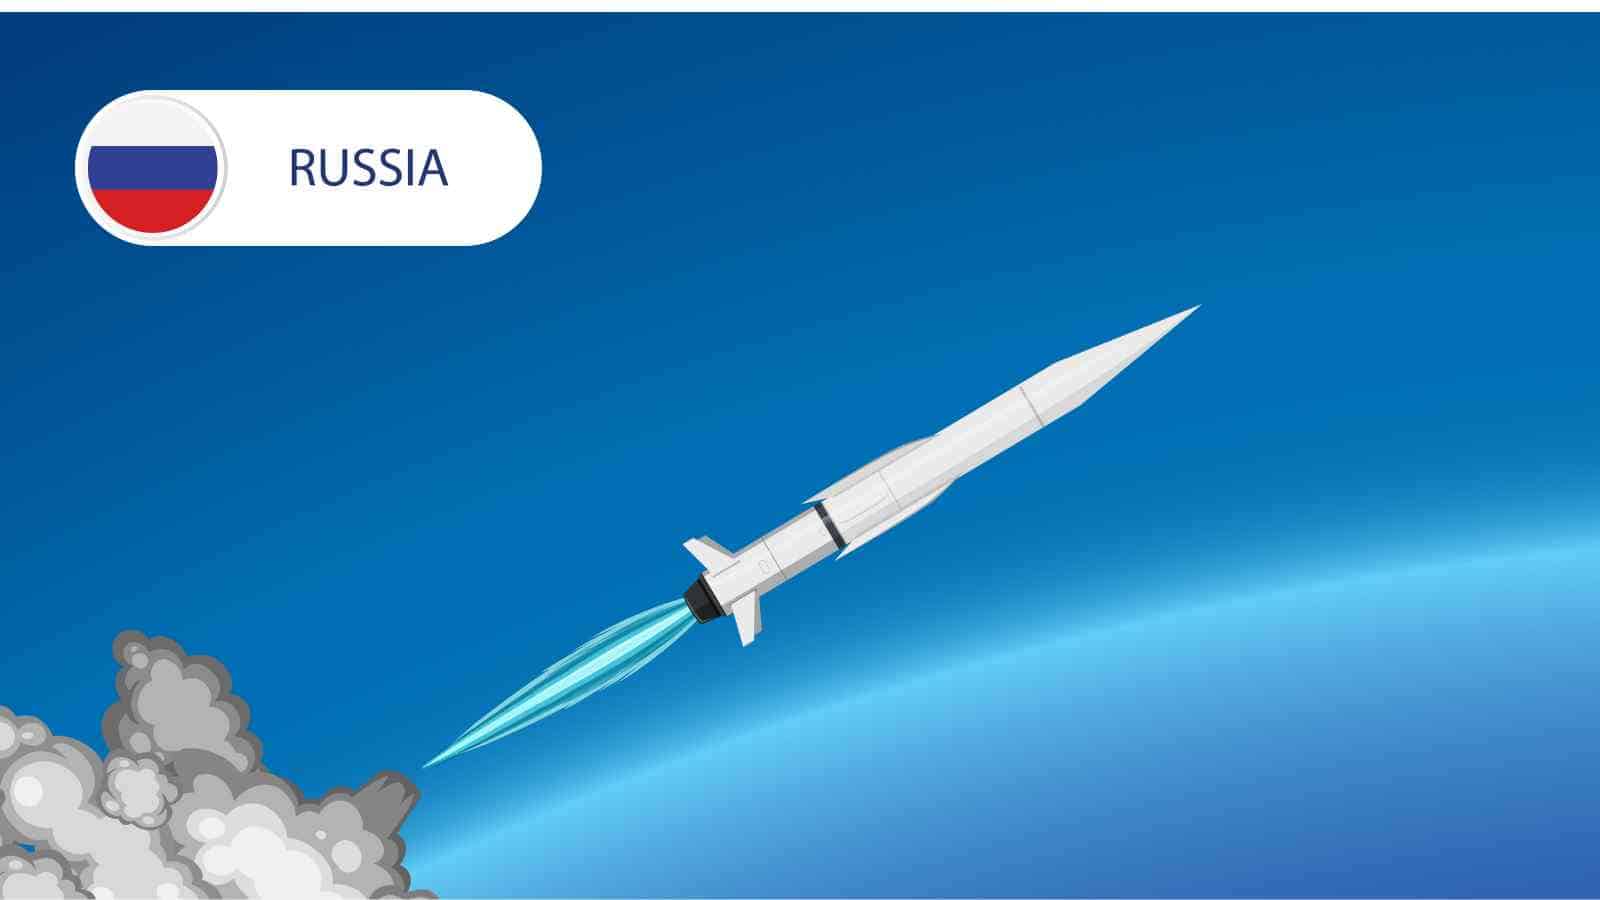 Il missile russo Zircon, tanto osannato da Putin, potrebbe essere meno pericoloso di quanto si pensasse